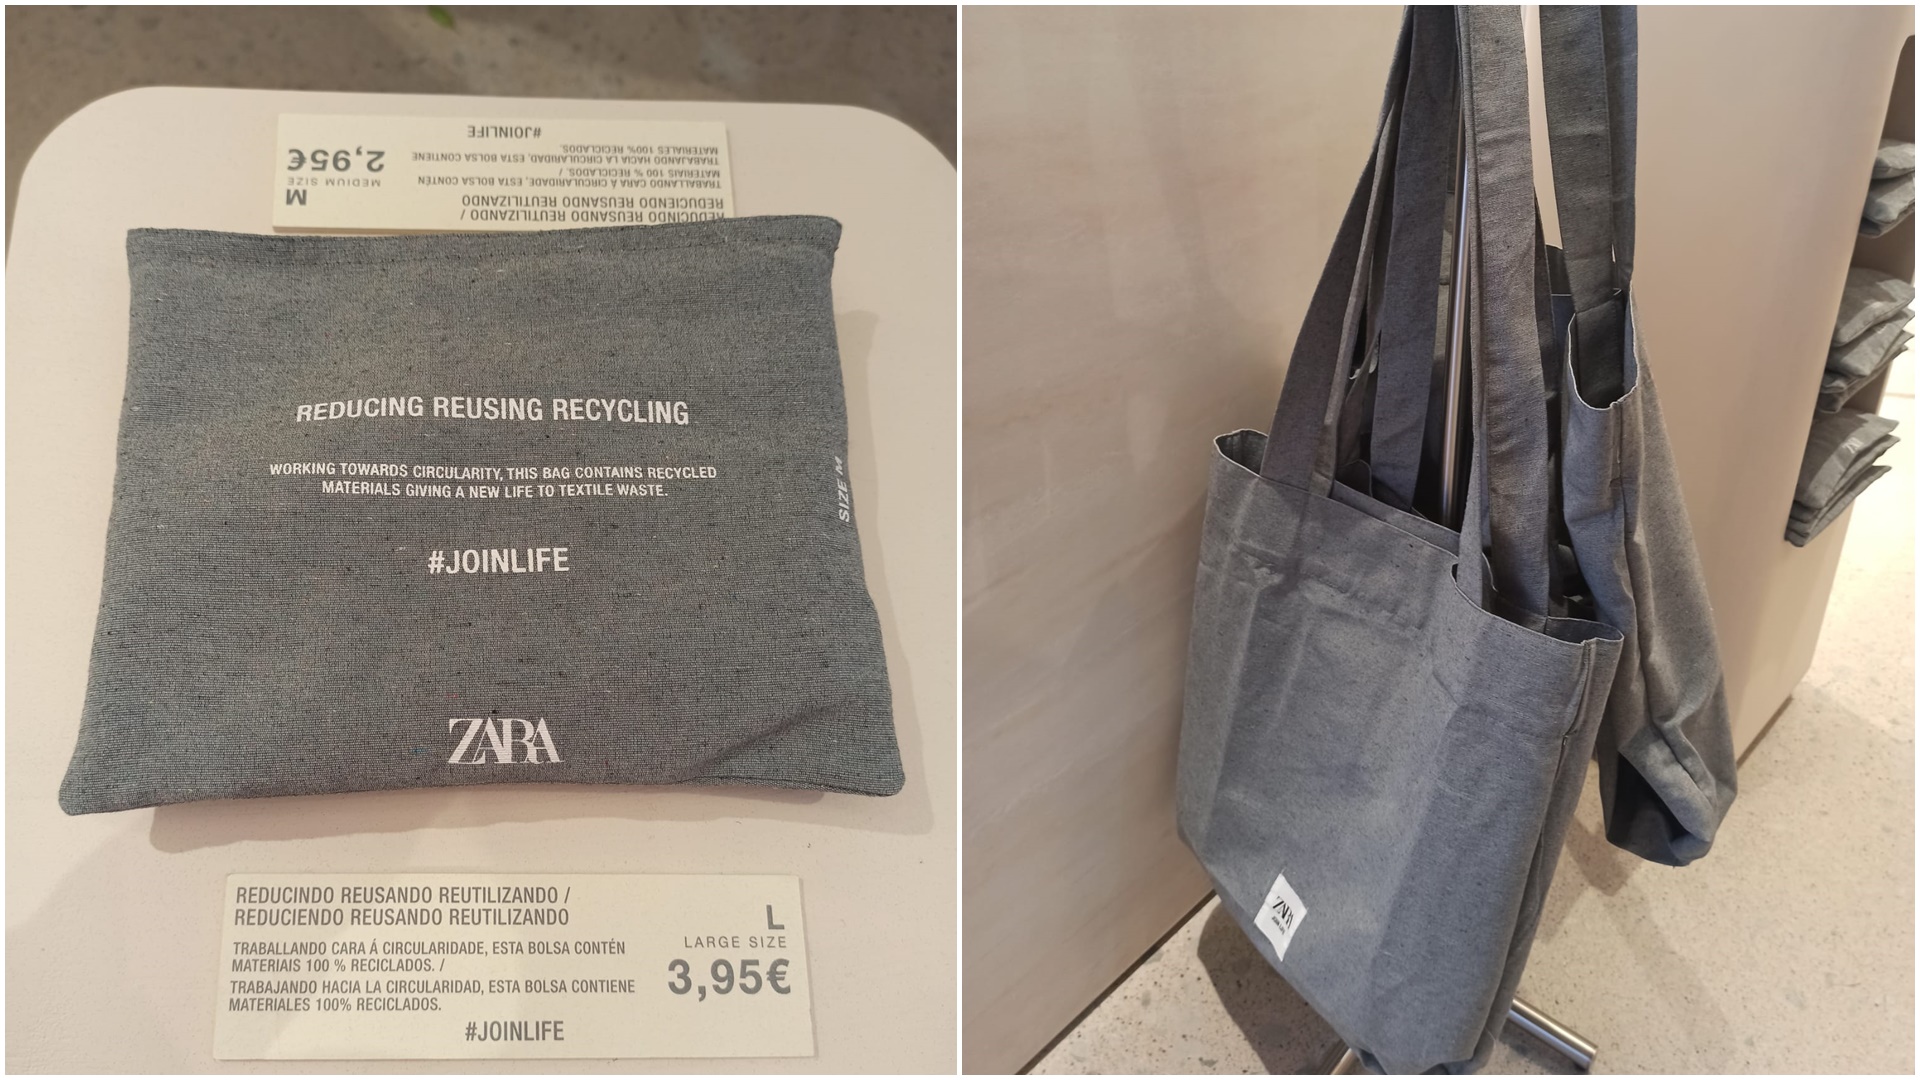 Zara unas bolsas tela reutilizables y elaboradas material 100% reciclado